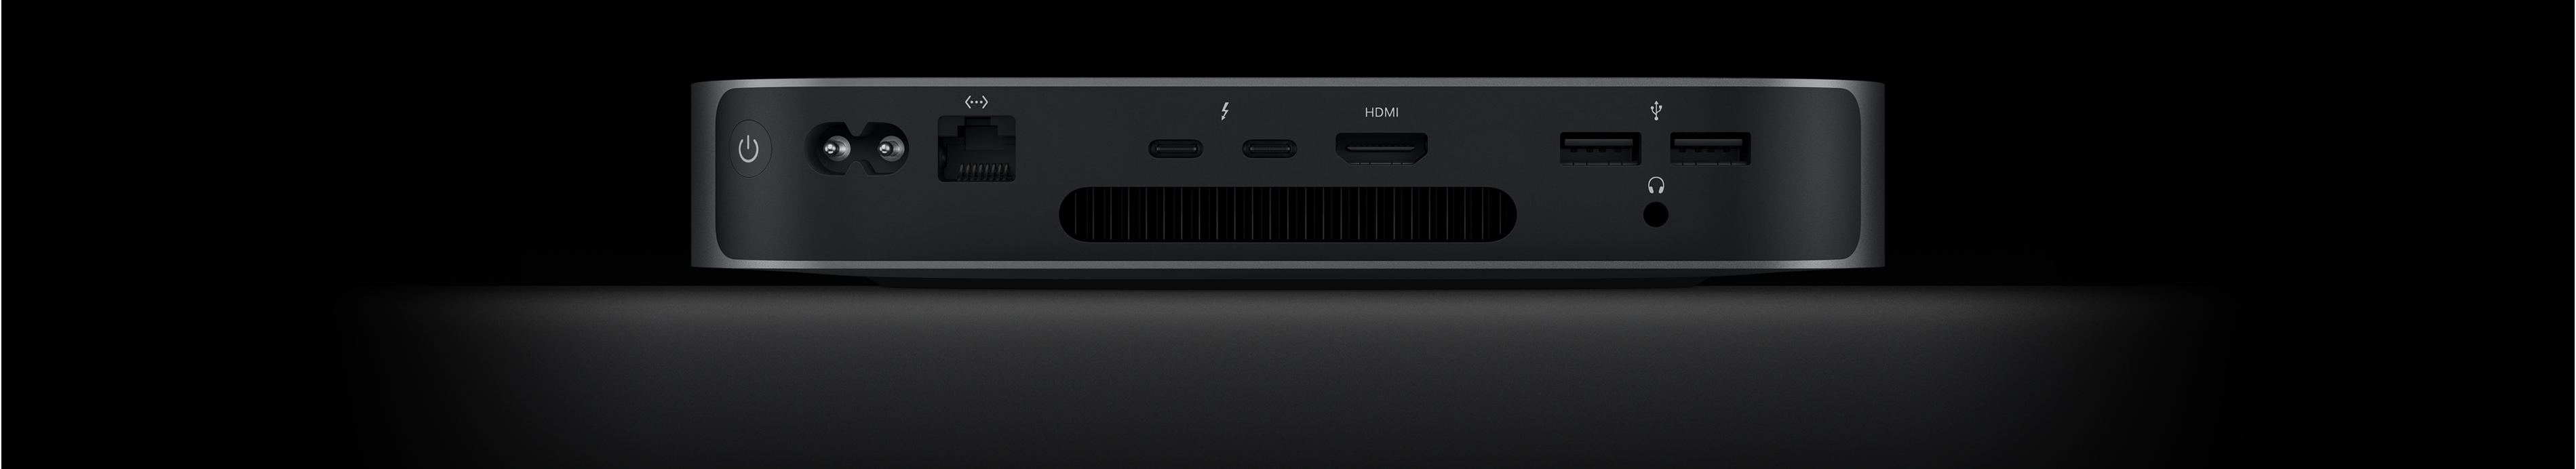 Mac mini set bagfra, så man kan se de to Thunderbolt 4-porte, HDMI-porten, to USB-A-porte, jackstikket til hovedtelefoner, Gigabit Ethernet-porten, strømindgangen og tændknappen.